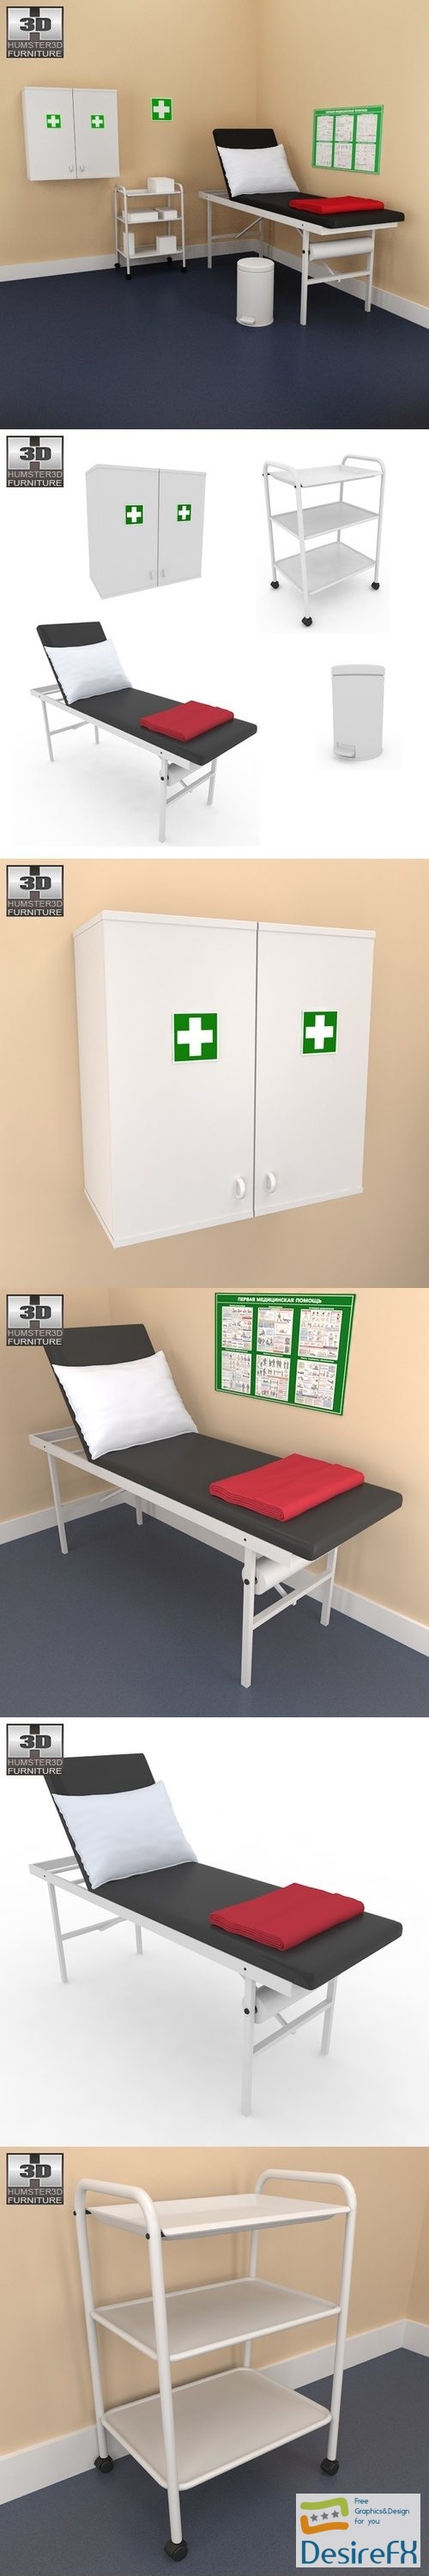 Hospital 02 Set - Medical Furniture 3D Model